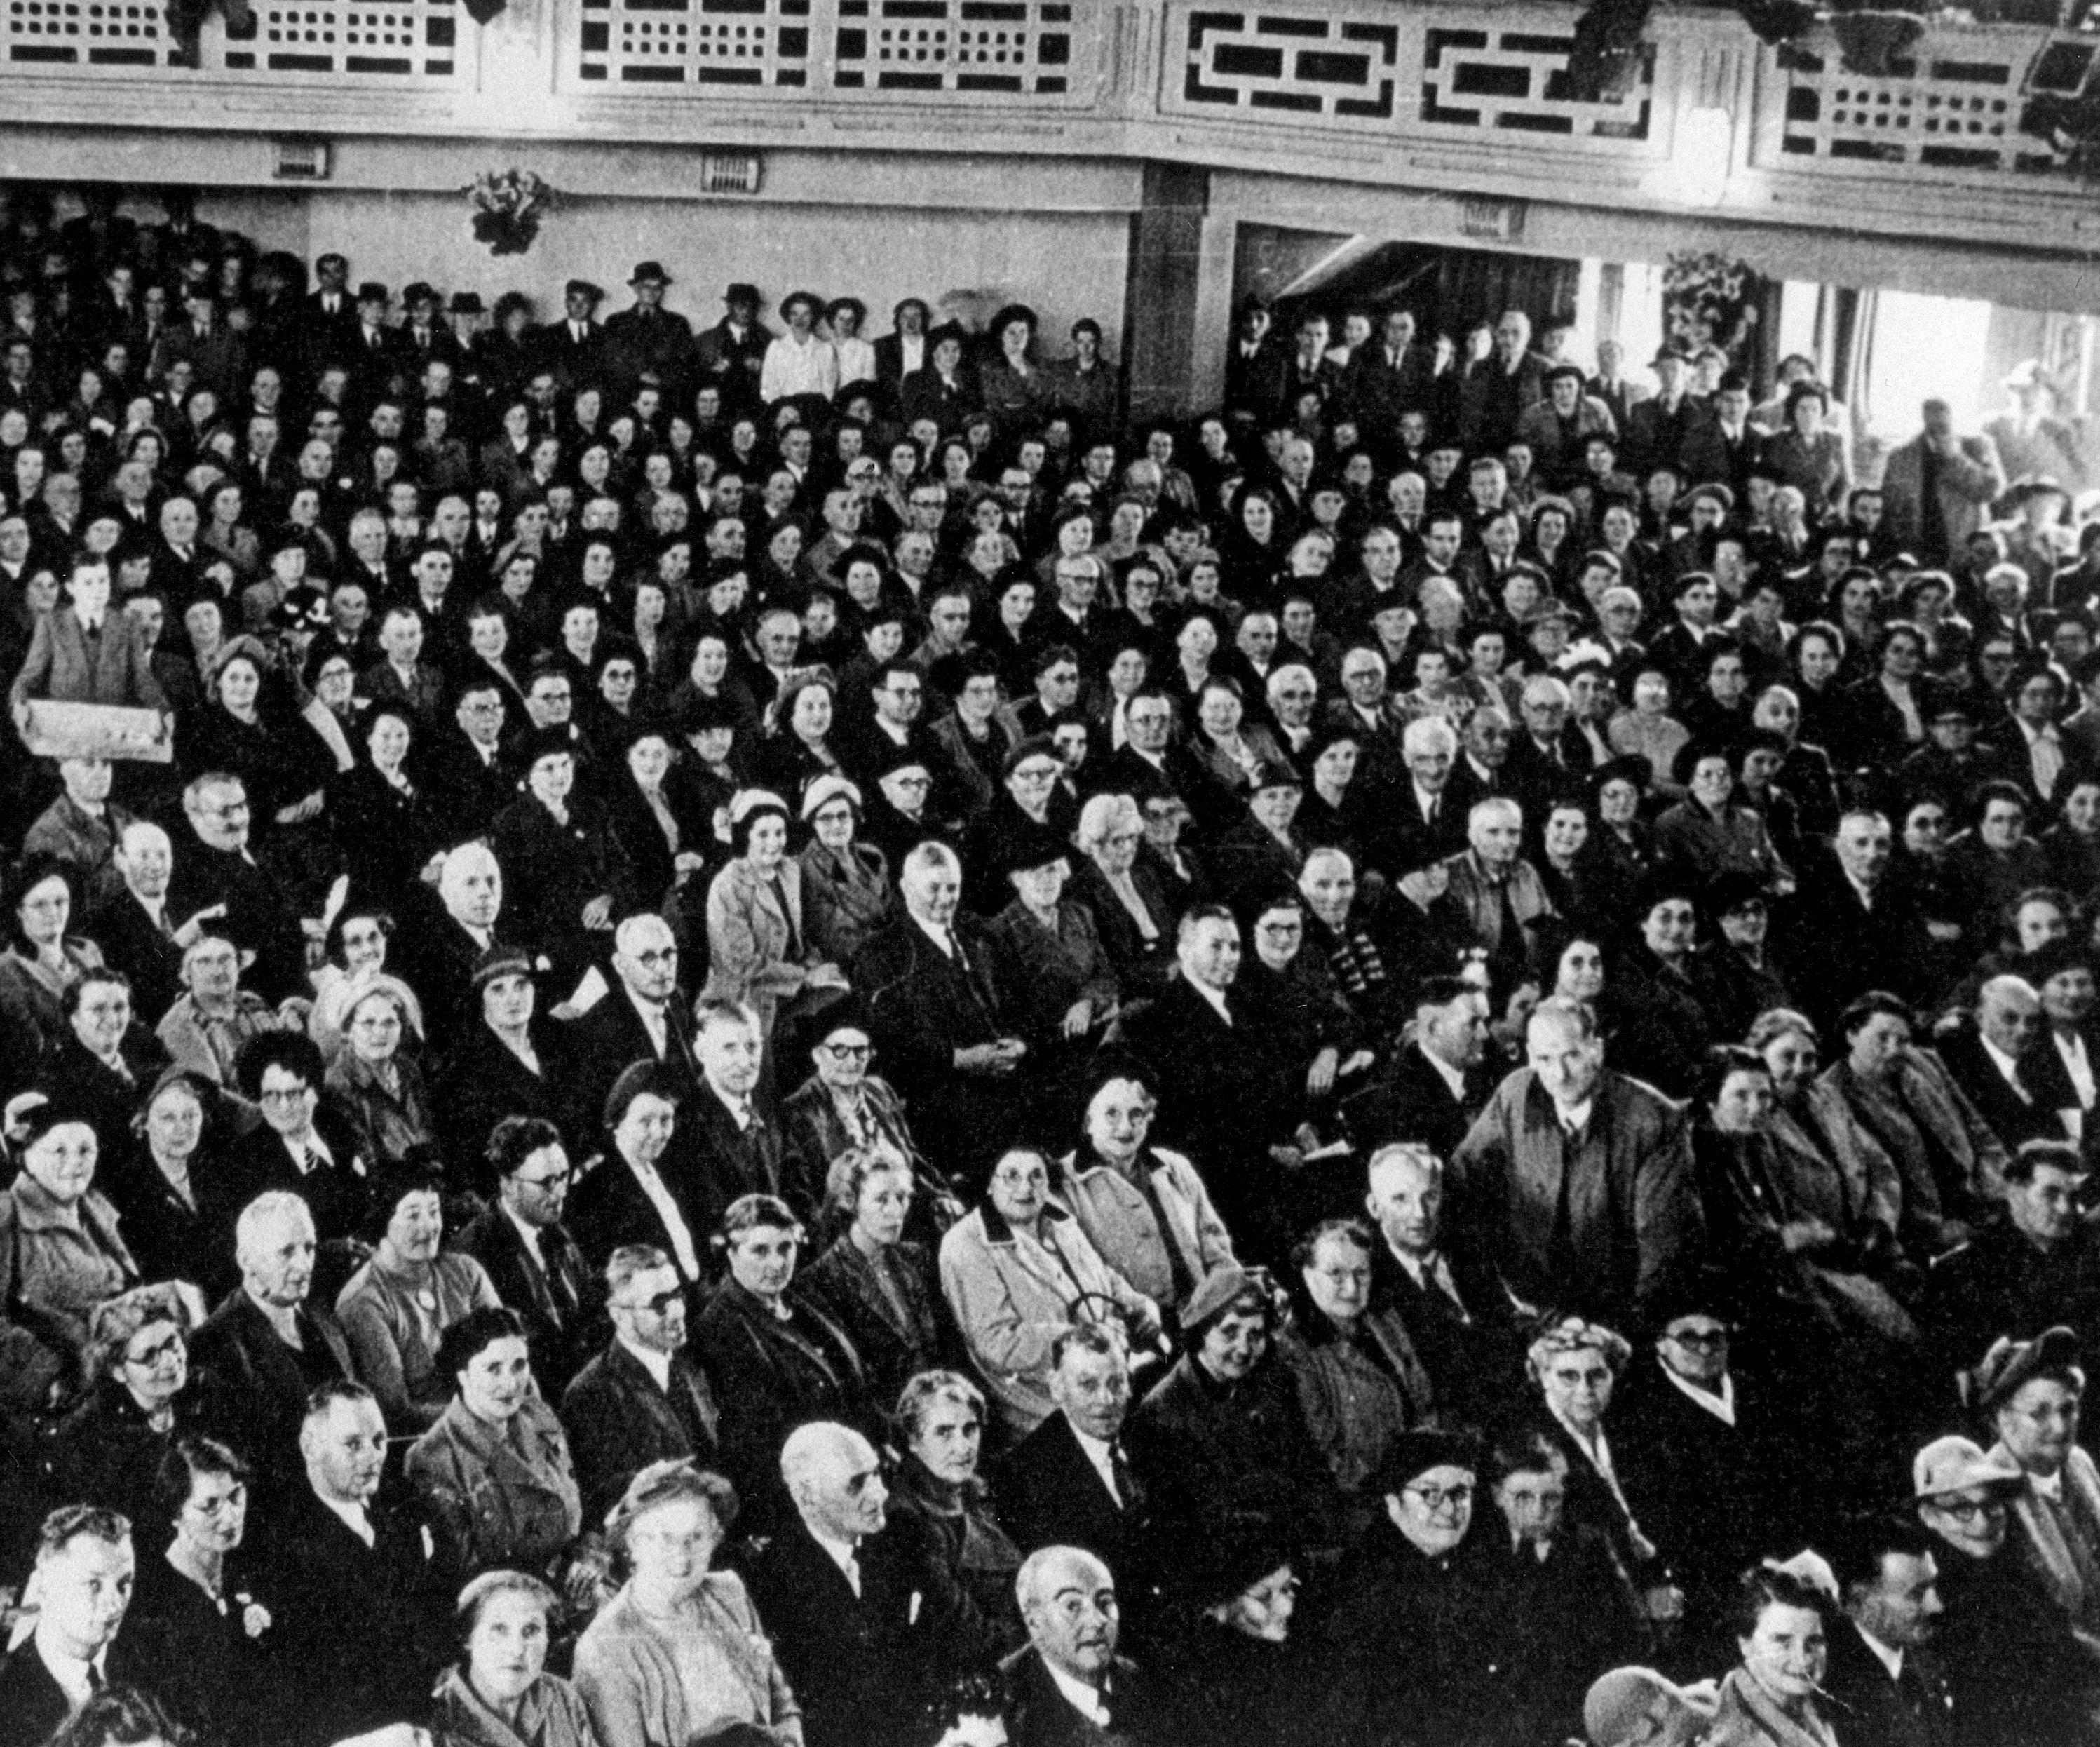 Porthcawl Pavilion audience 1957